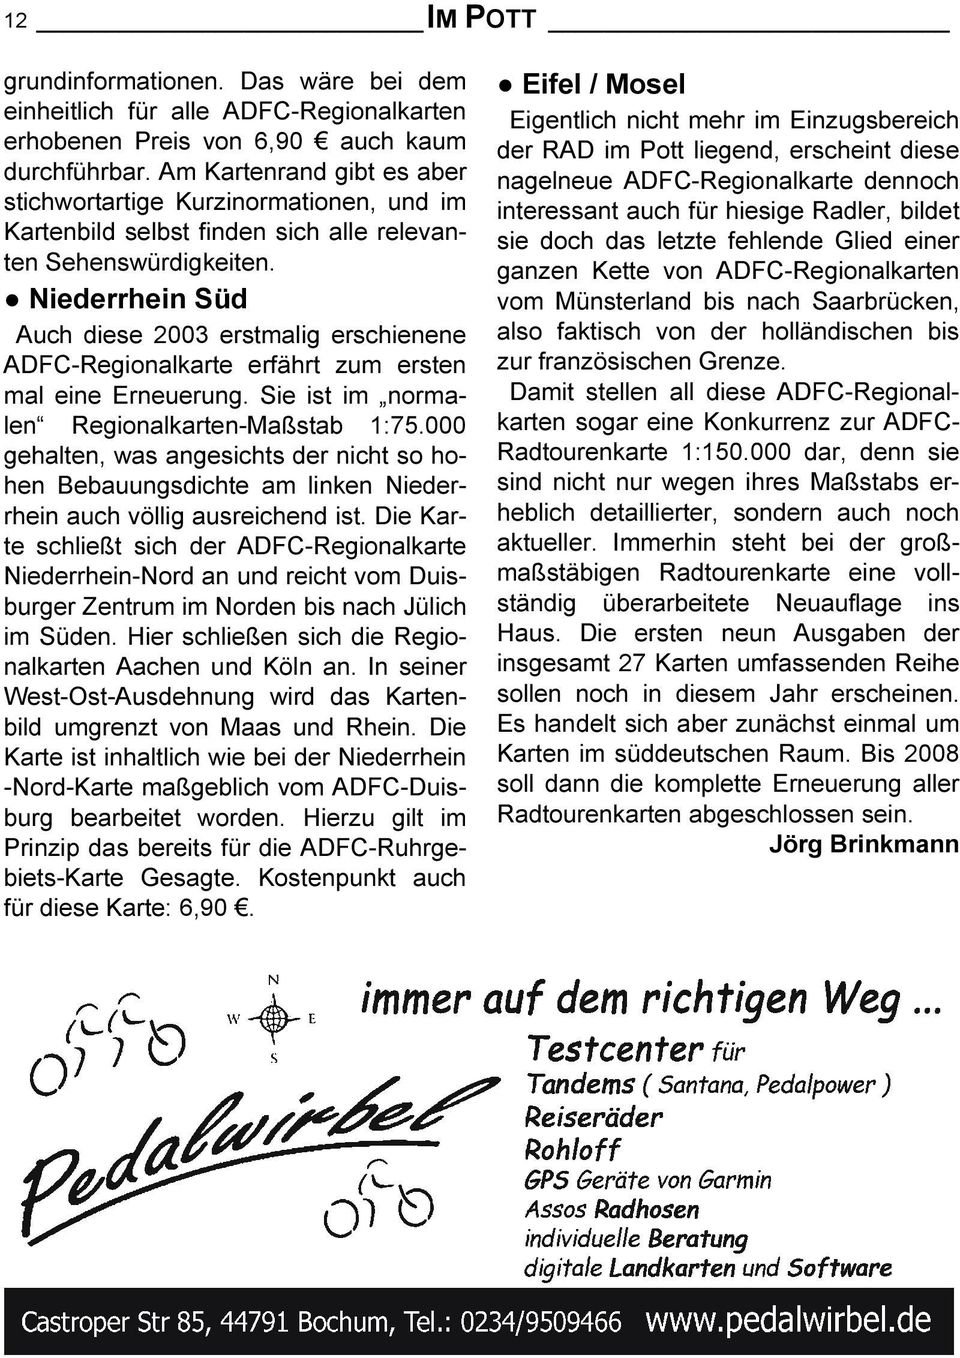 Niederrhein Süd Auch diese 2003 erstmalig erschienene ADFC-Regionalkarte erfährt zum ersten mal eine Erneuerung. Sie ist im normalen Regionalkarten-Maßstab 1:75.